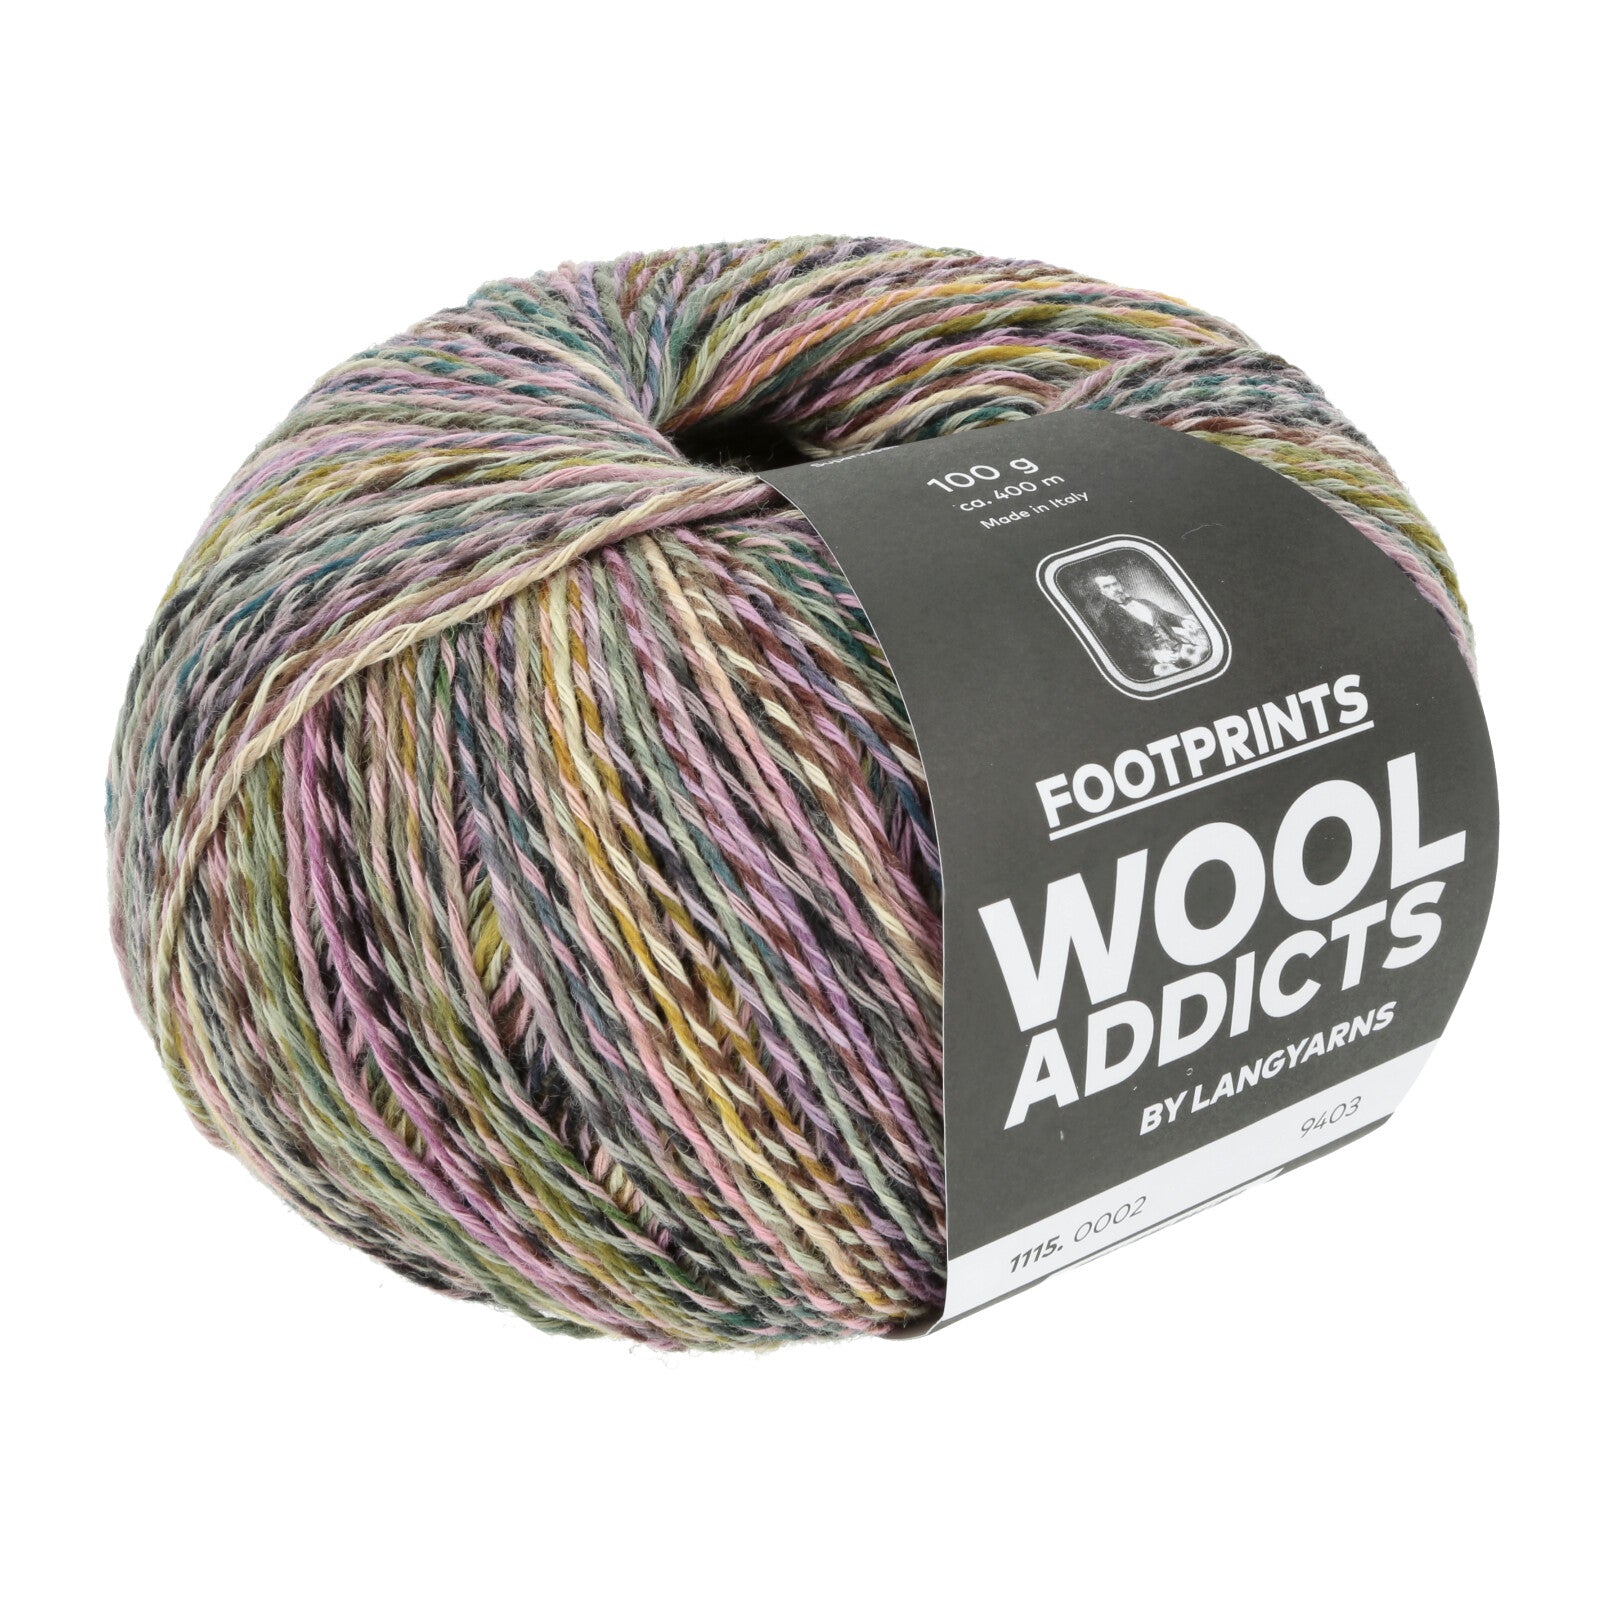 WoolAddicts Footprints yarn color Two